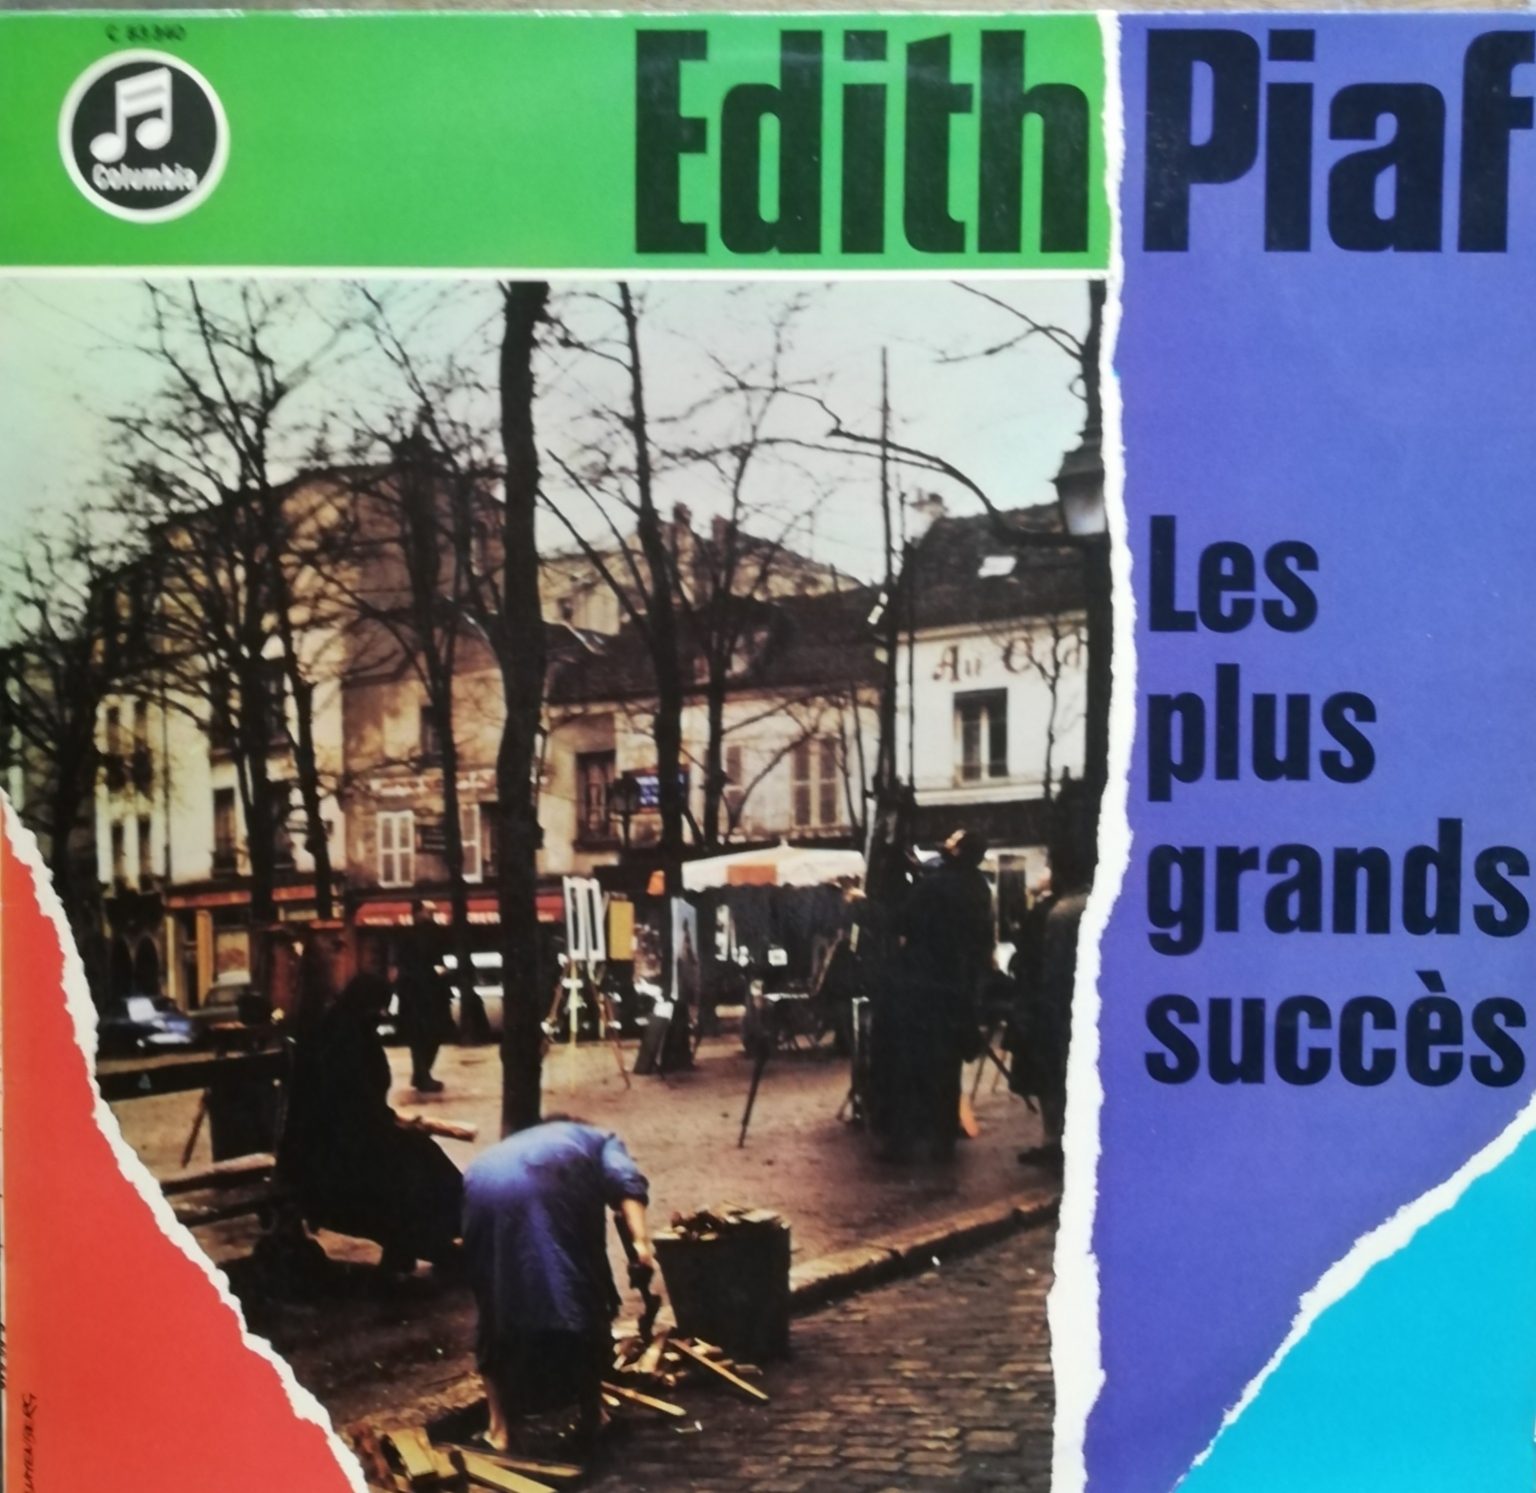 Eidth Piaf – Les plus grands succes LP